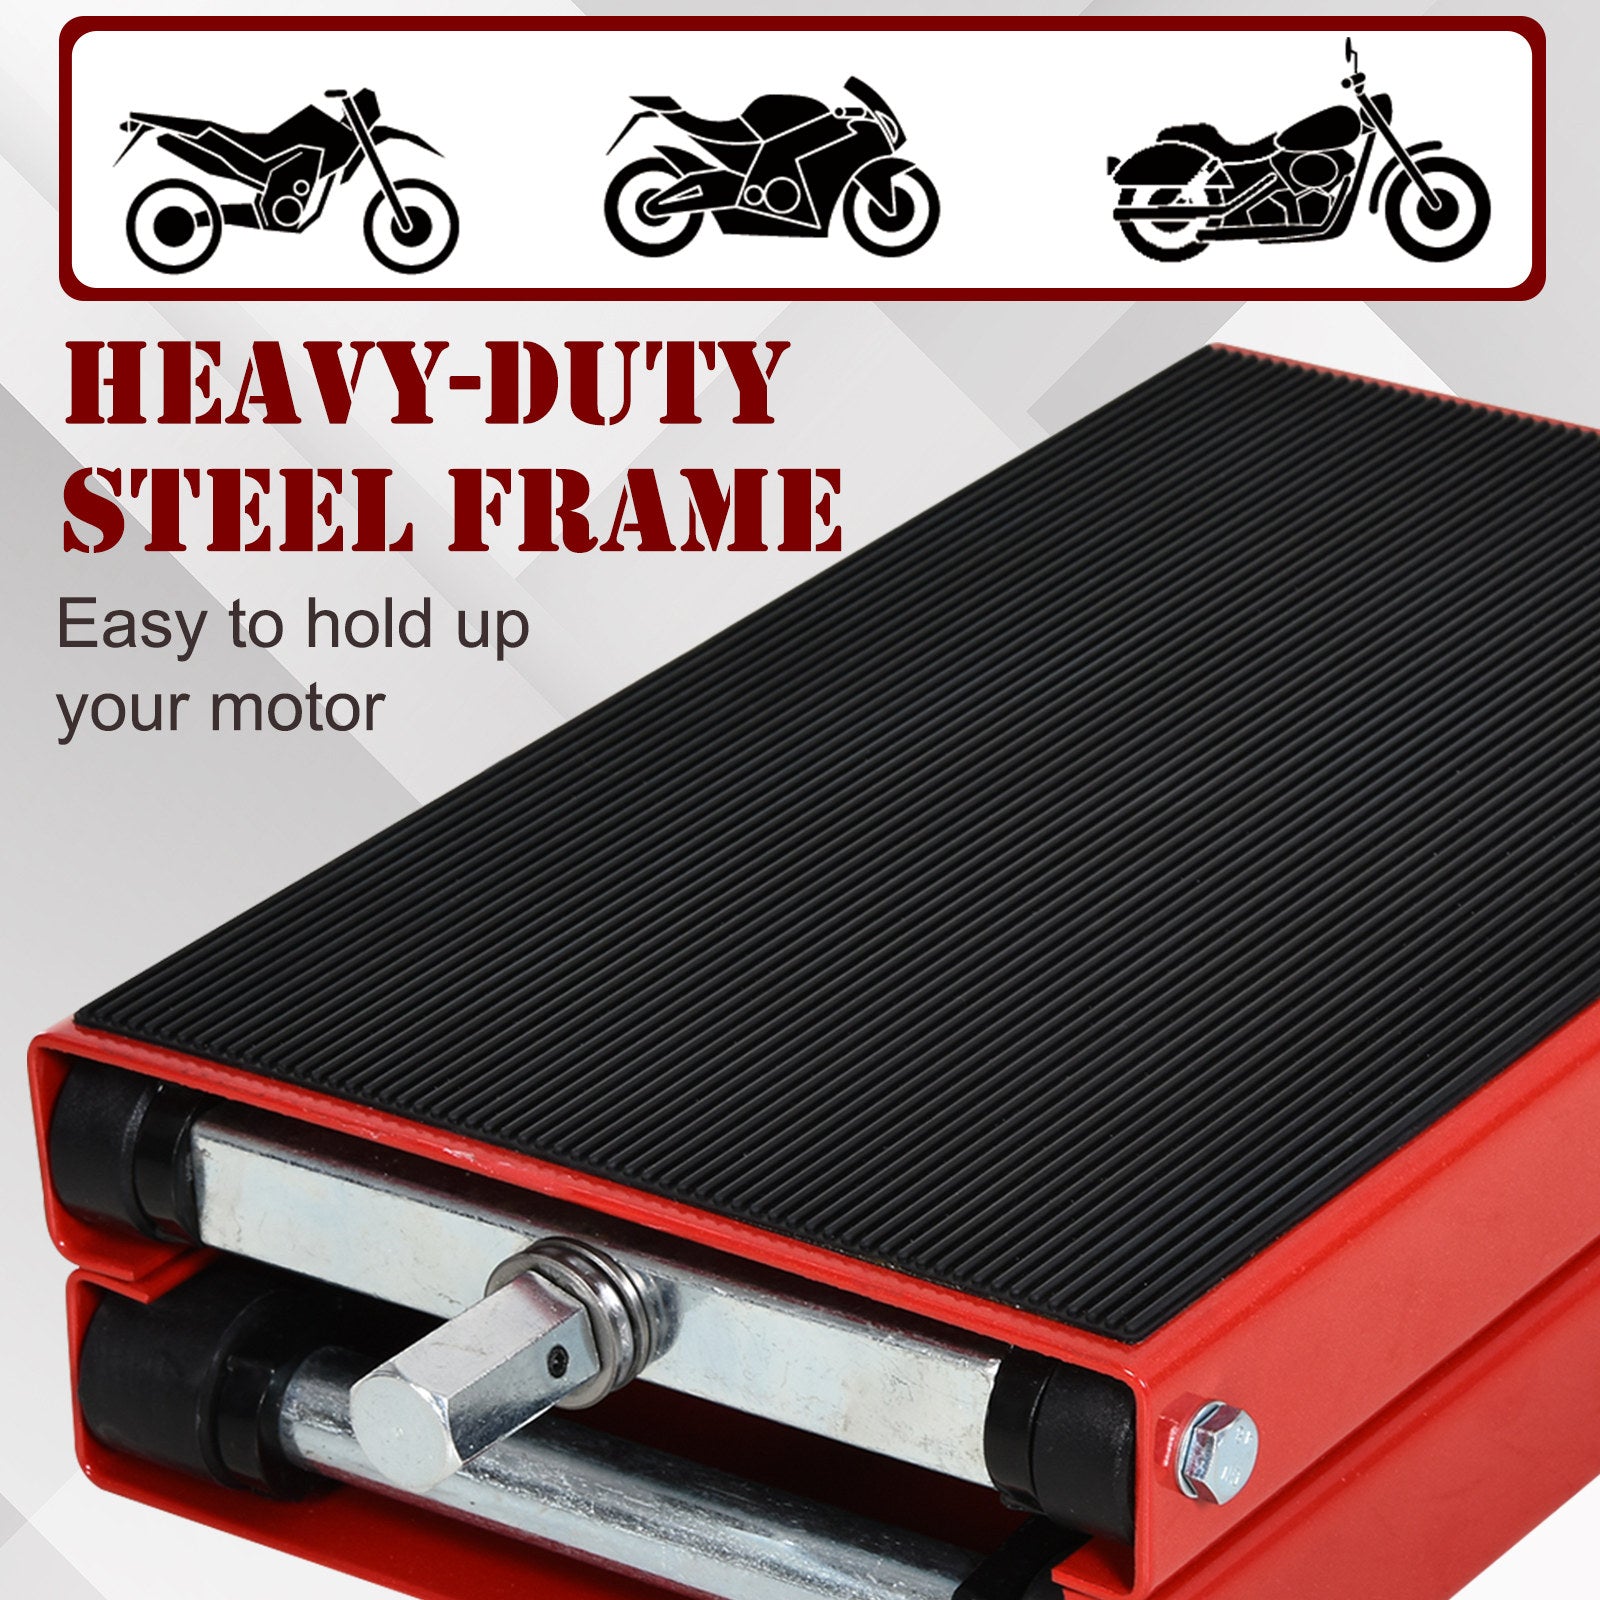 DURHAND Steel Manual Repair Motorcycle Lift Platform Red - Inspirely